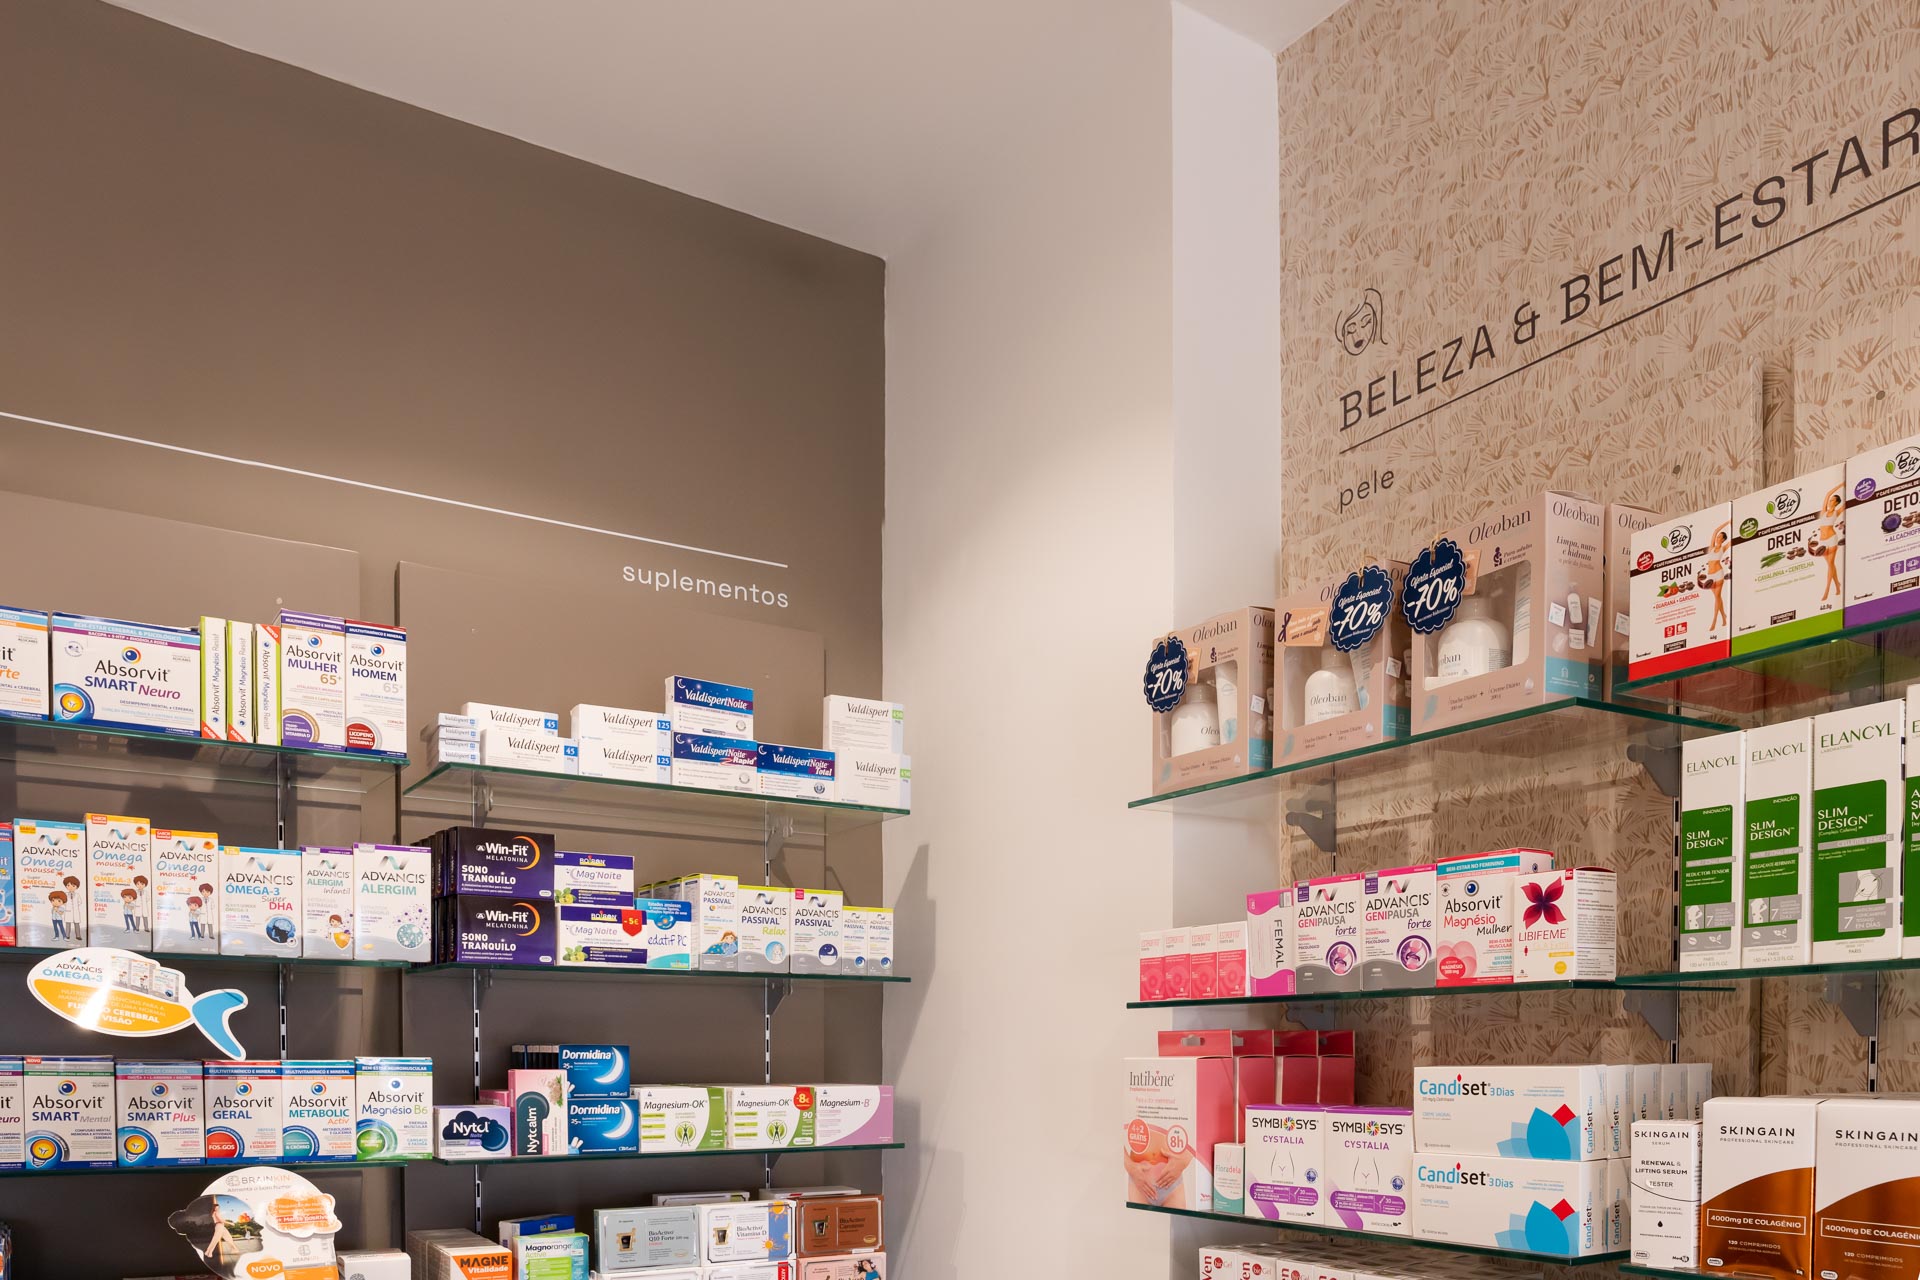 Farmacia remodelada - renovacao de farmacia, projeto design de interiores e obra em farmacias. Visual merchandise para farmacias. como expor os produtos em farmacia.